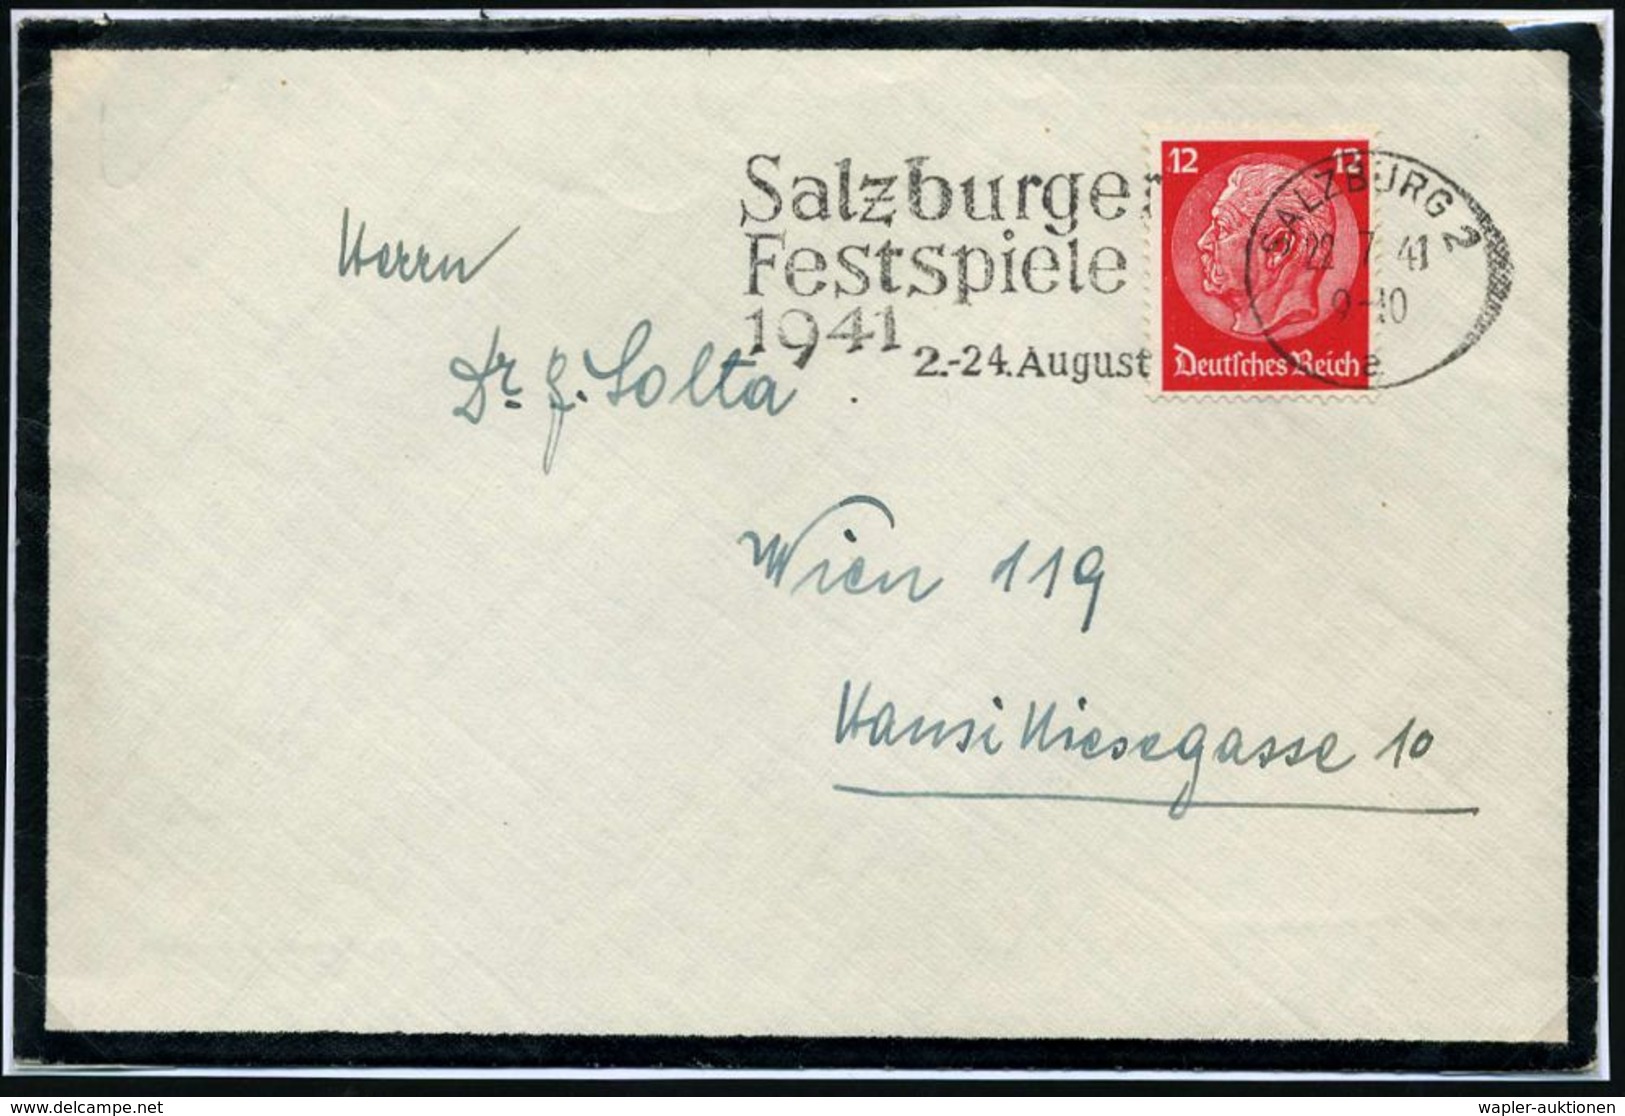 SALZBURG 2/ A/ Salzburger/ Festspiele/ ..2.-24.Aug. 1941 (22.7.) Seltener MWSt , Klar Gest. Inl.-Trauer-Bf.!  (Bo.12 A)  - Musique